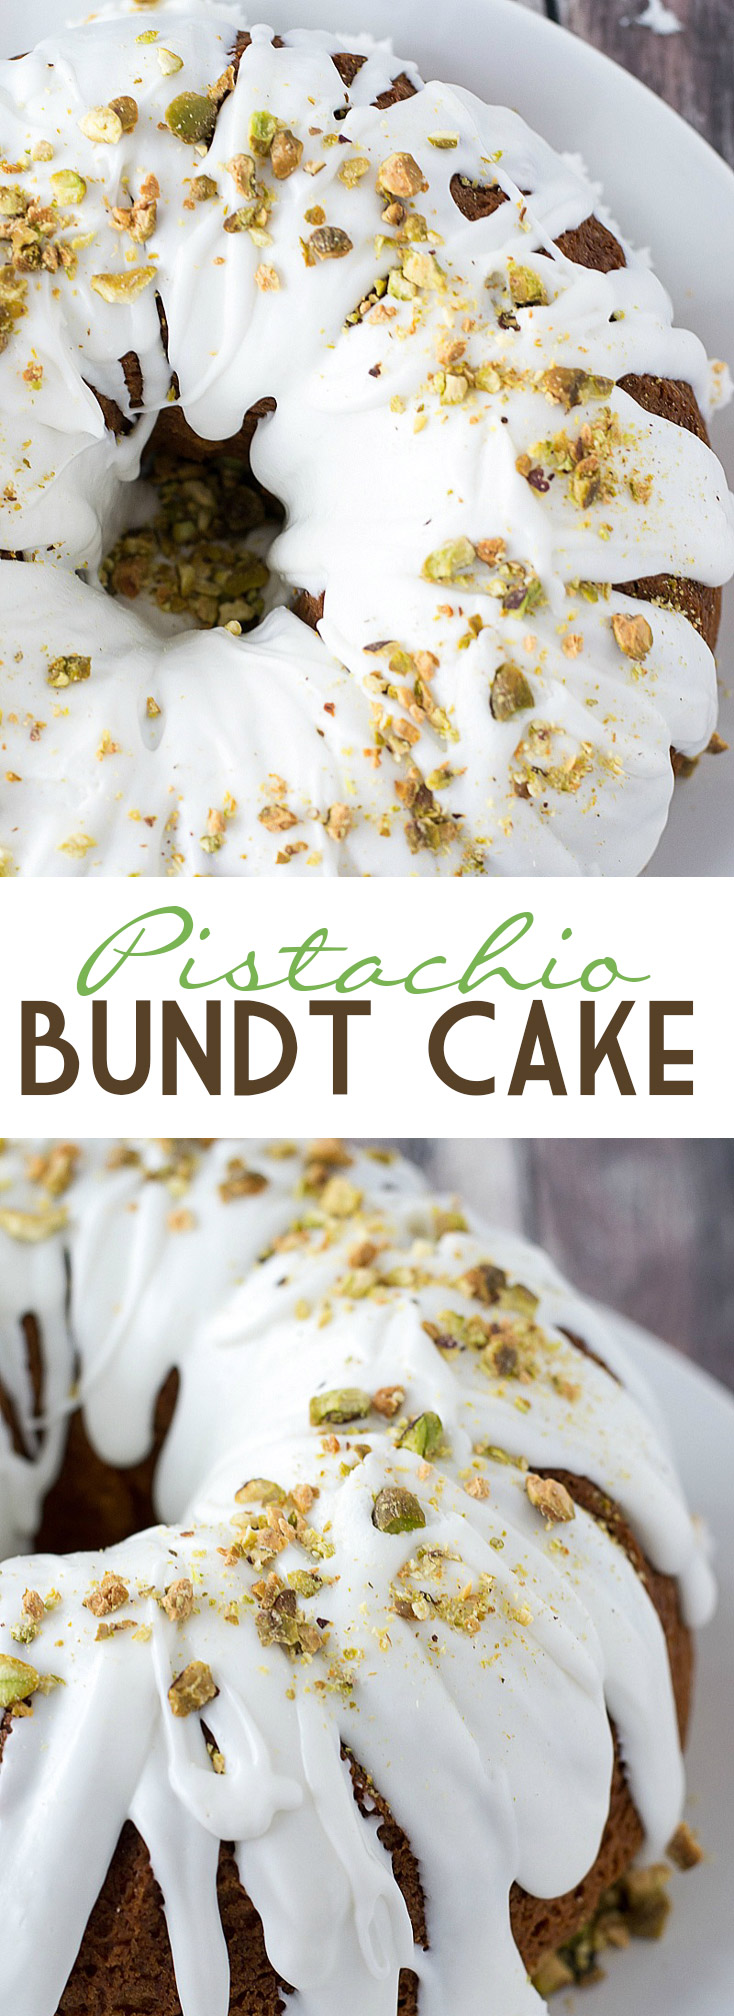 Pistachio Bundt Cake | www.motherthyme.com